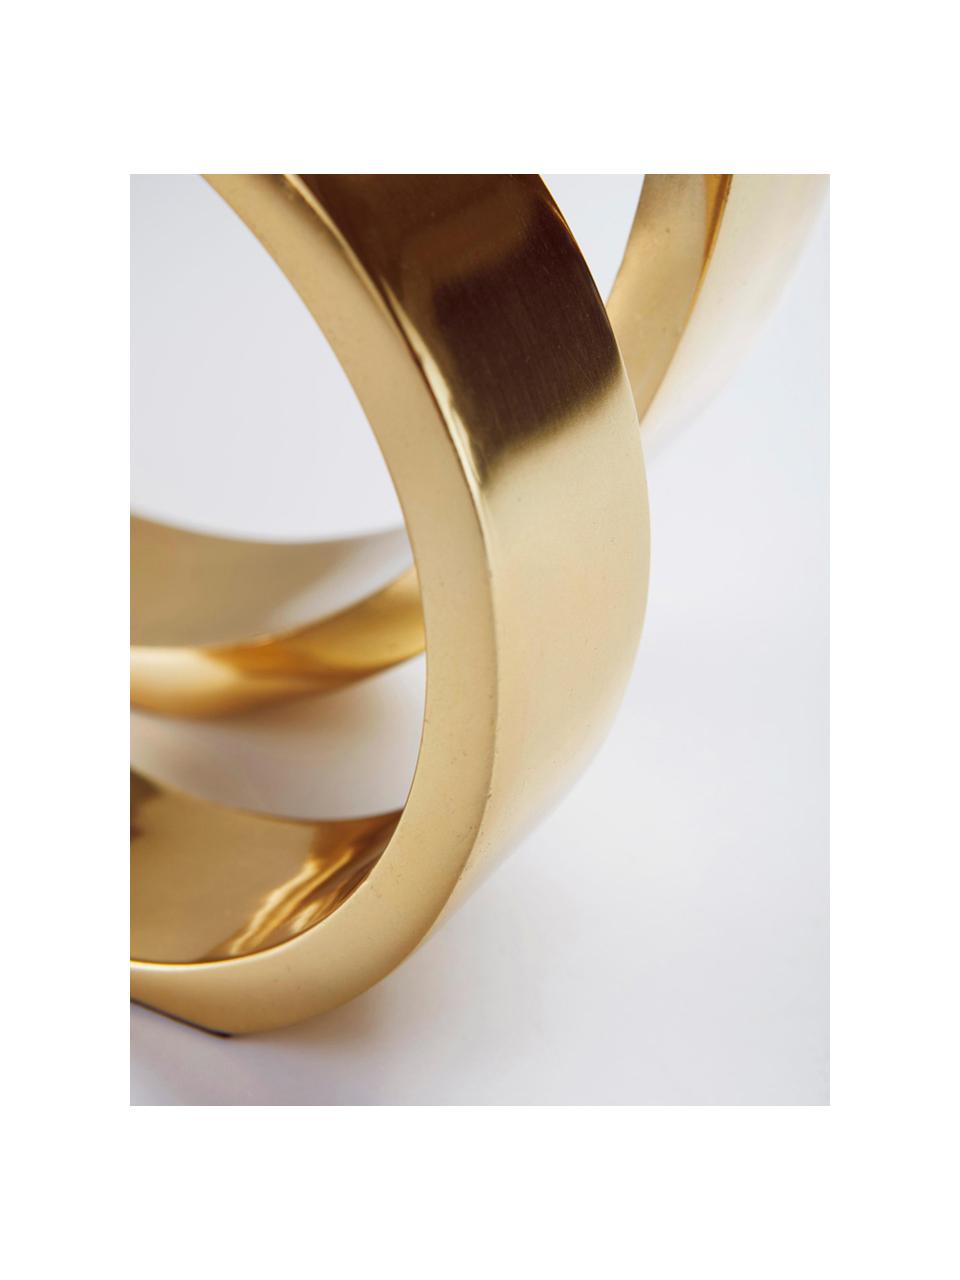 Decoratief object Ring, Gecoat metaal, Goudkleurig, Ø 25 x H 25 cm